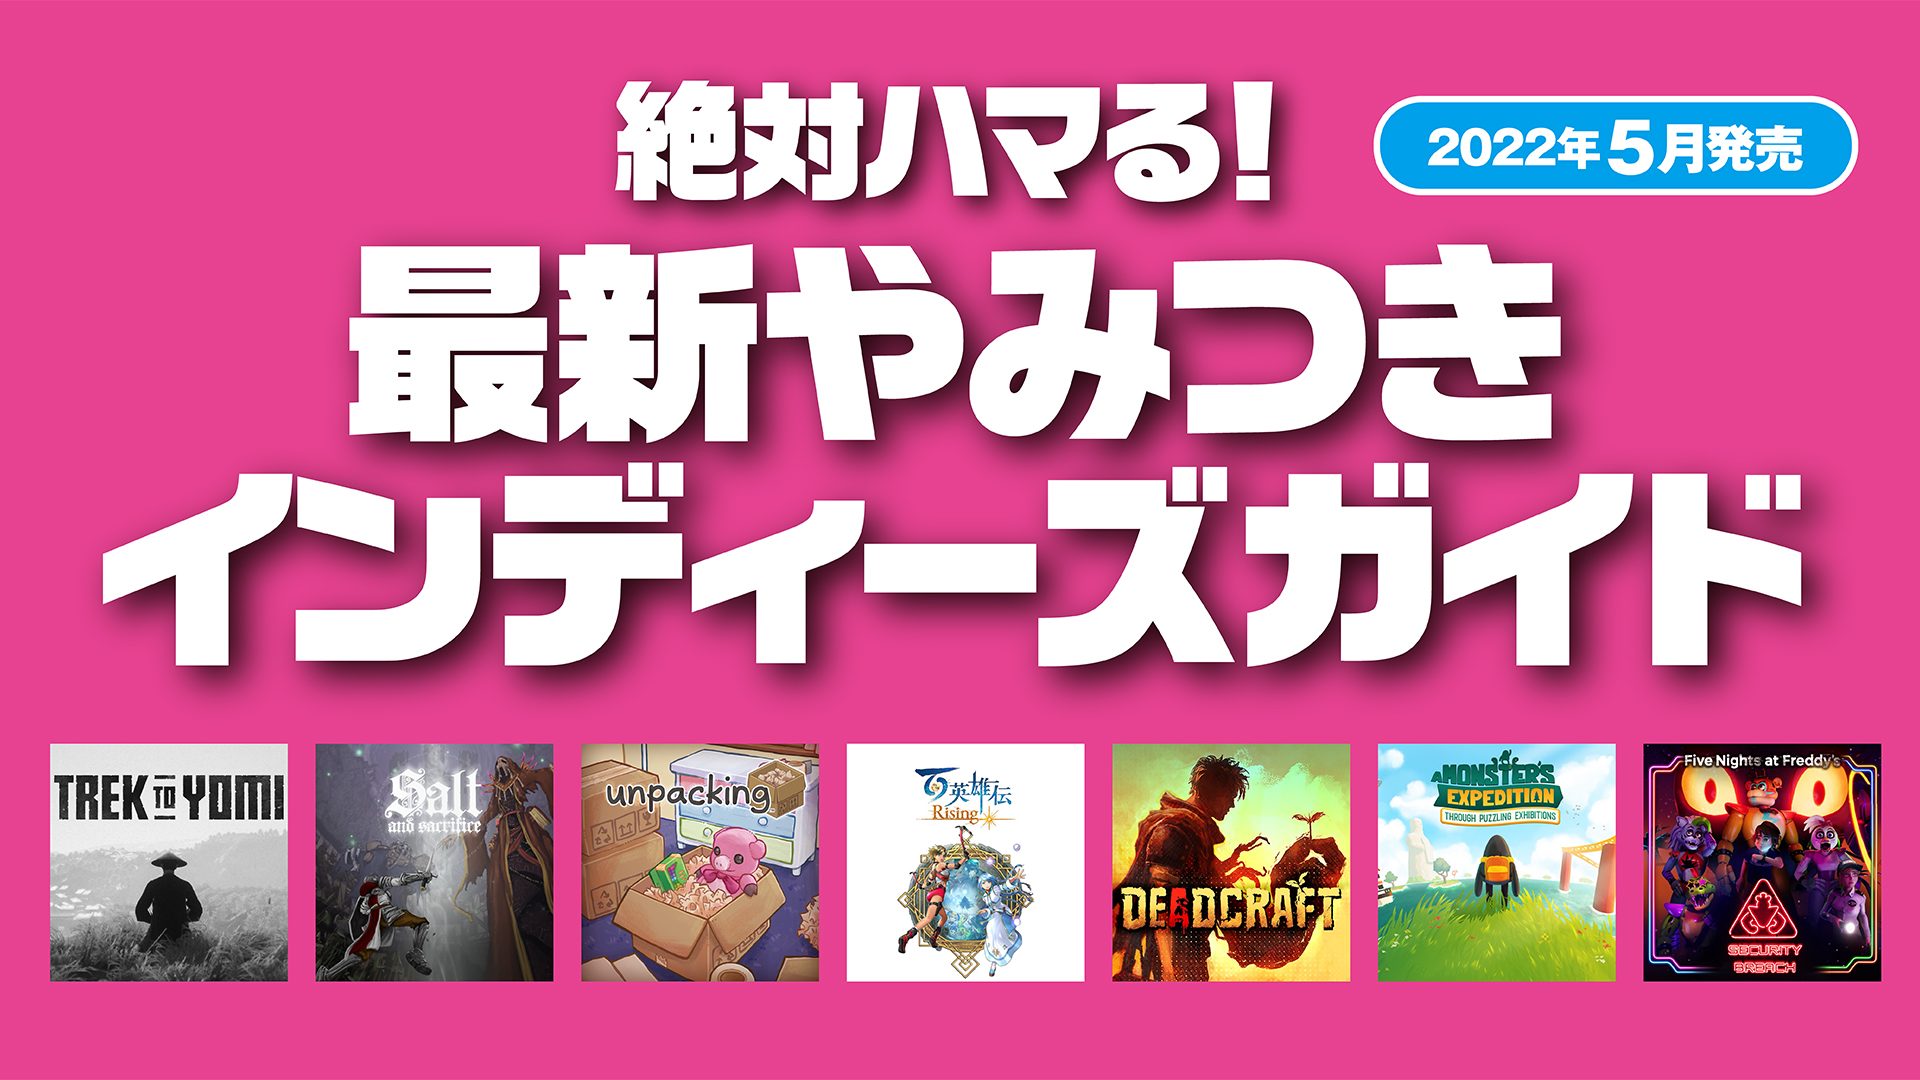 絶対ハマる 最新やみつきインディーズガイド 22年5月発売 Playstation Blog 日本語